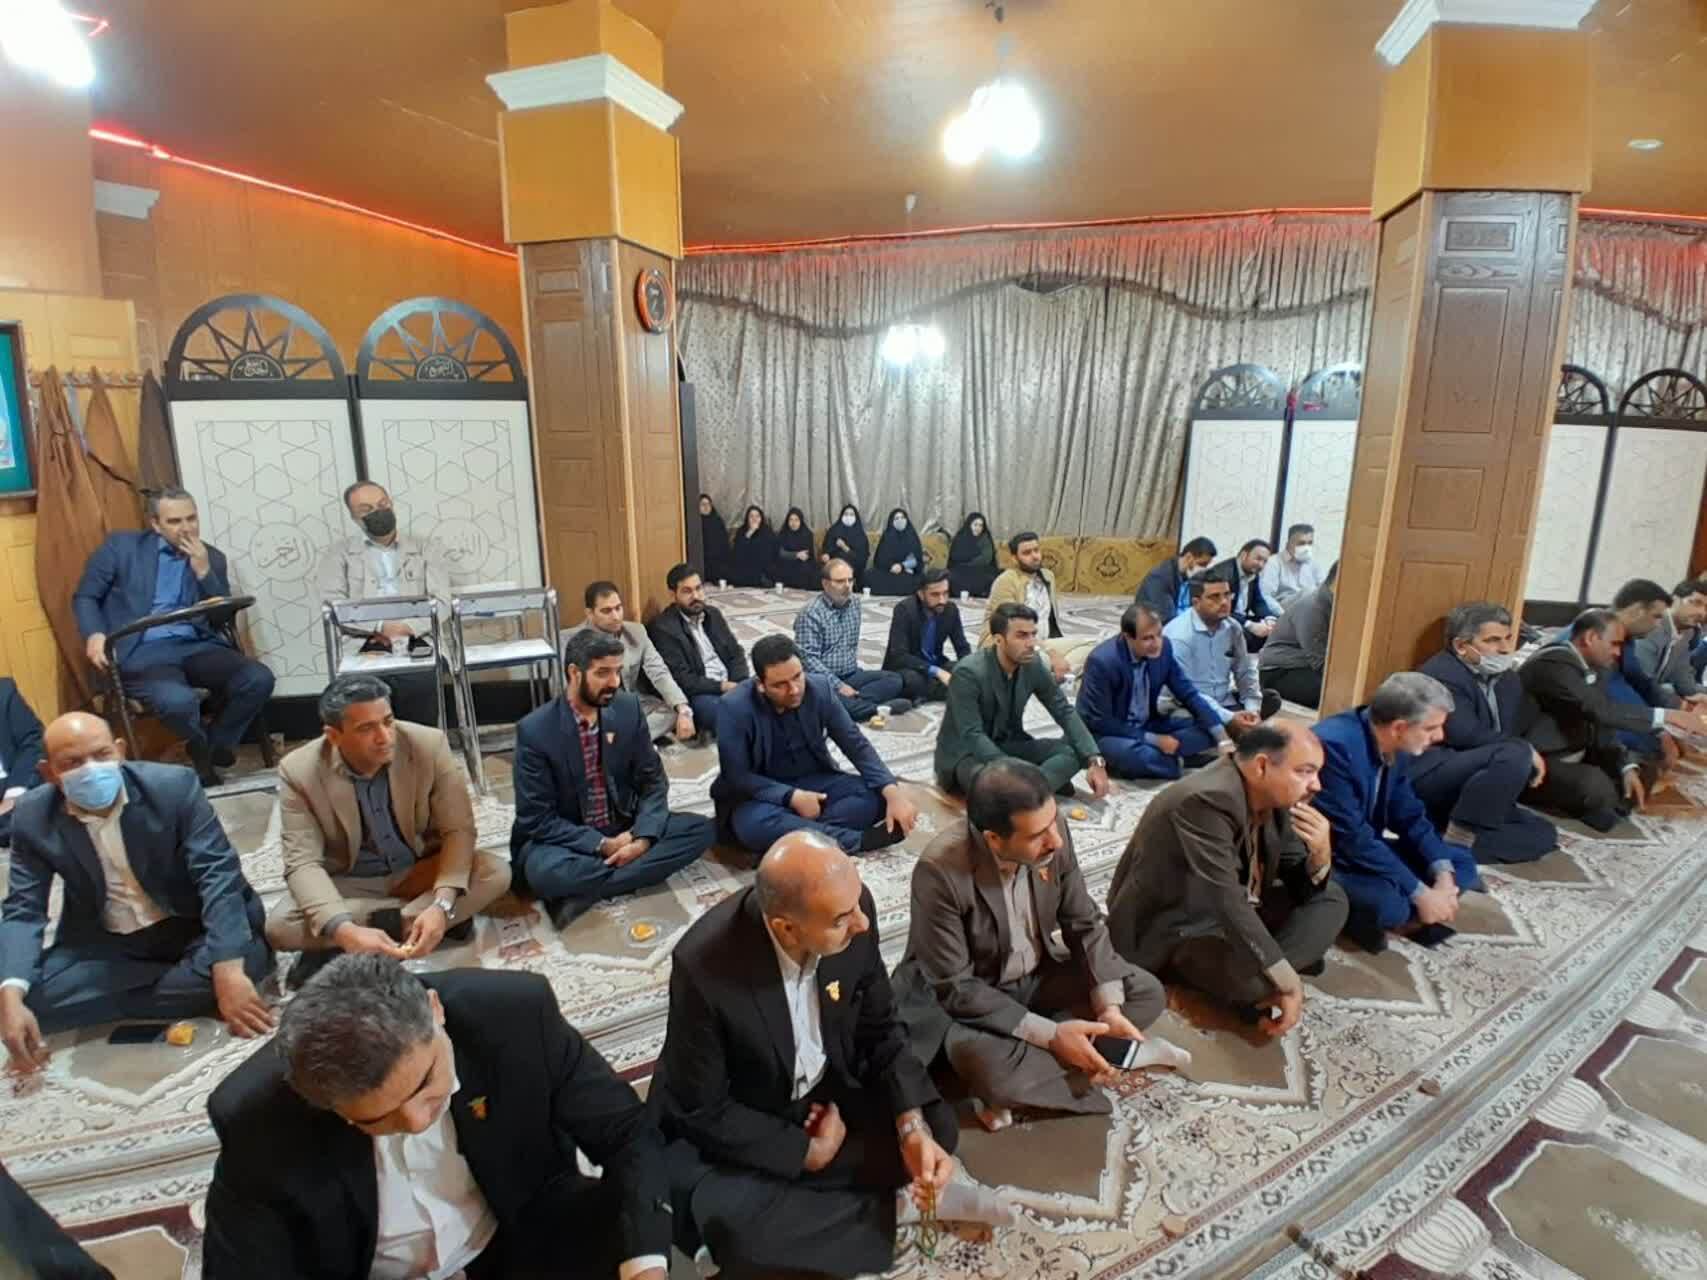 نشست تخصصی نماز با محوریت سبک زندگی ایرانی اسلامی در زاهدان